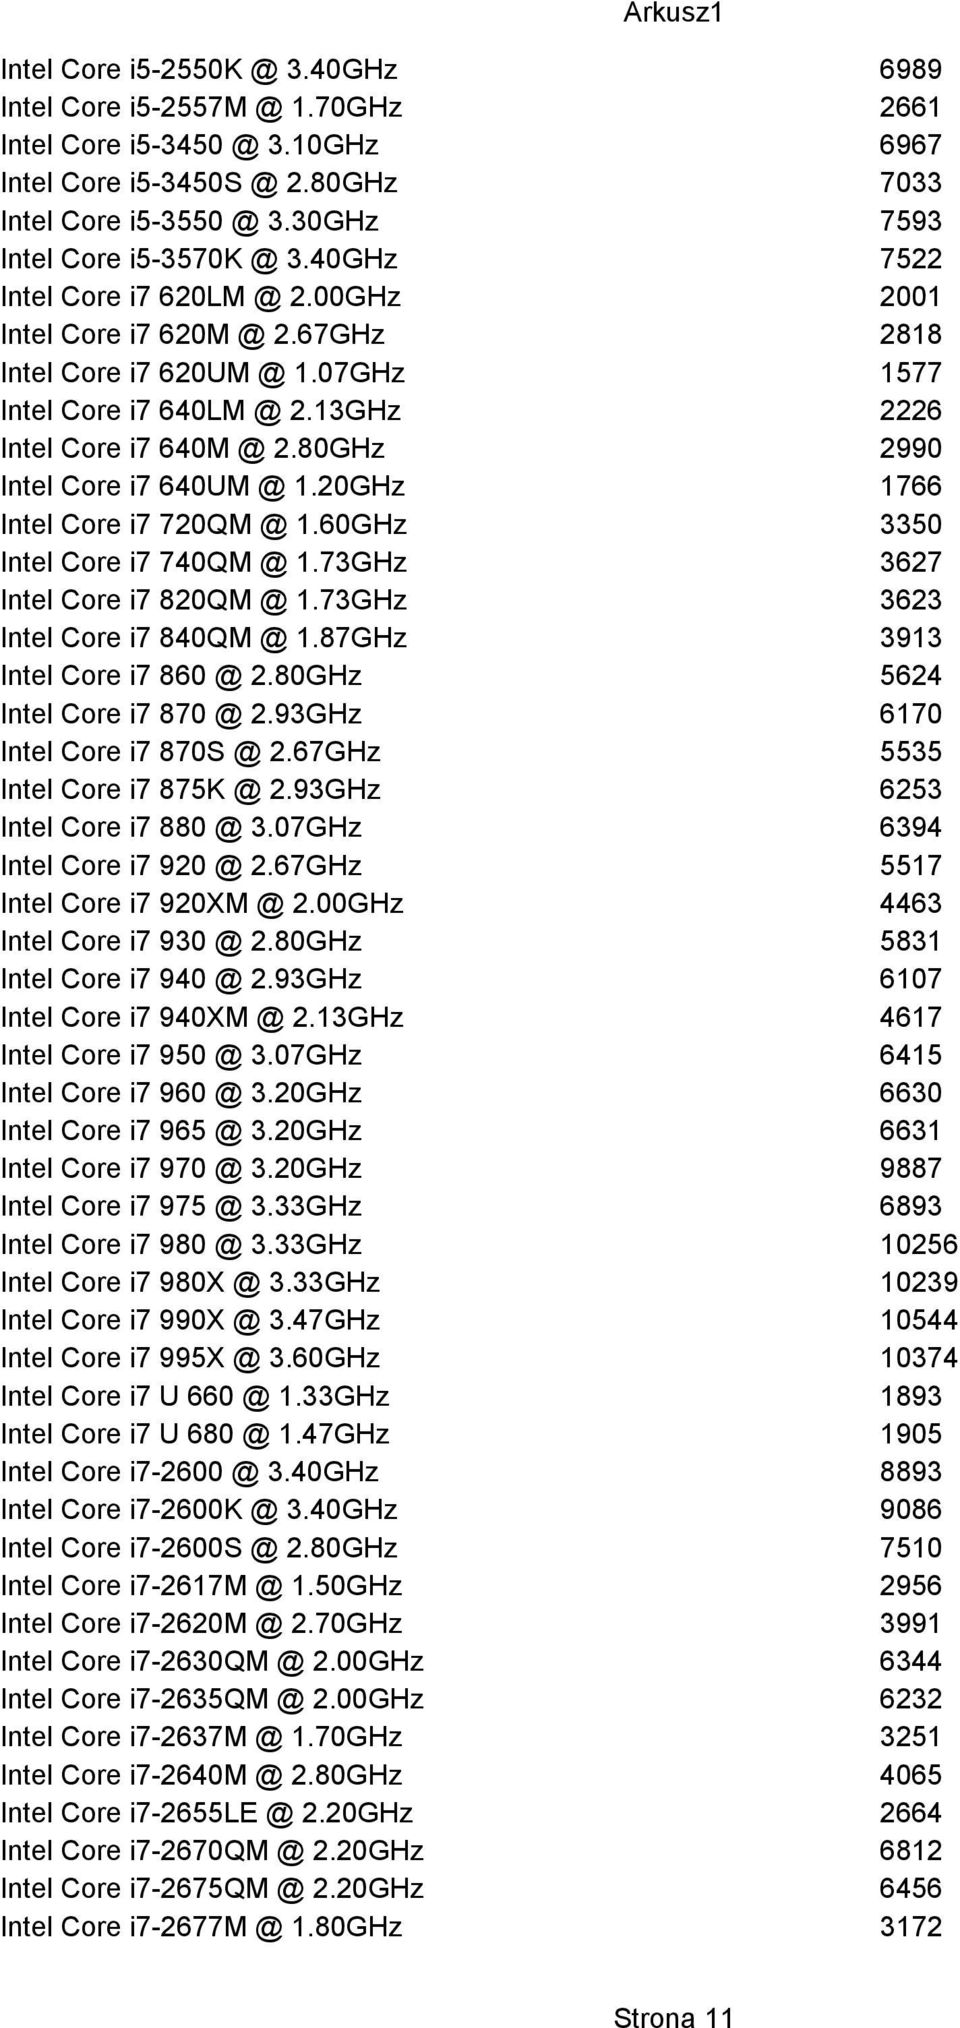 80GHz 2990 Intel Core i7 640UM @ 1.20GHz 1766 Intel Core i7 720QM @ 1.60GHz 3350 Intel Core i7 740QM @ 1.73GHz 3627 Intel Core i7 820QM @ 1.73GHz 3623 Intel Core i7 840QM @ 1.